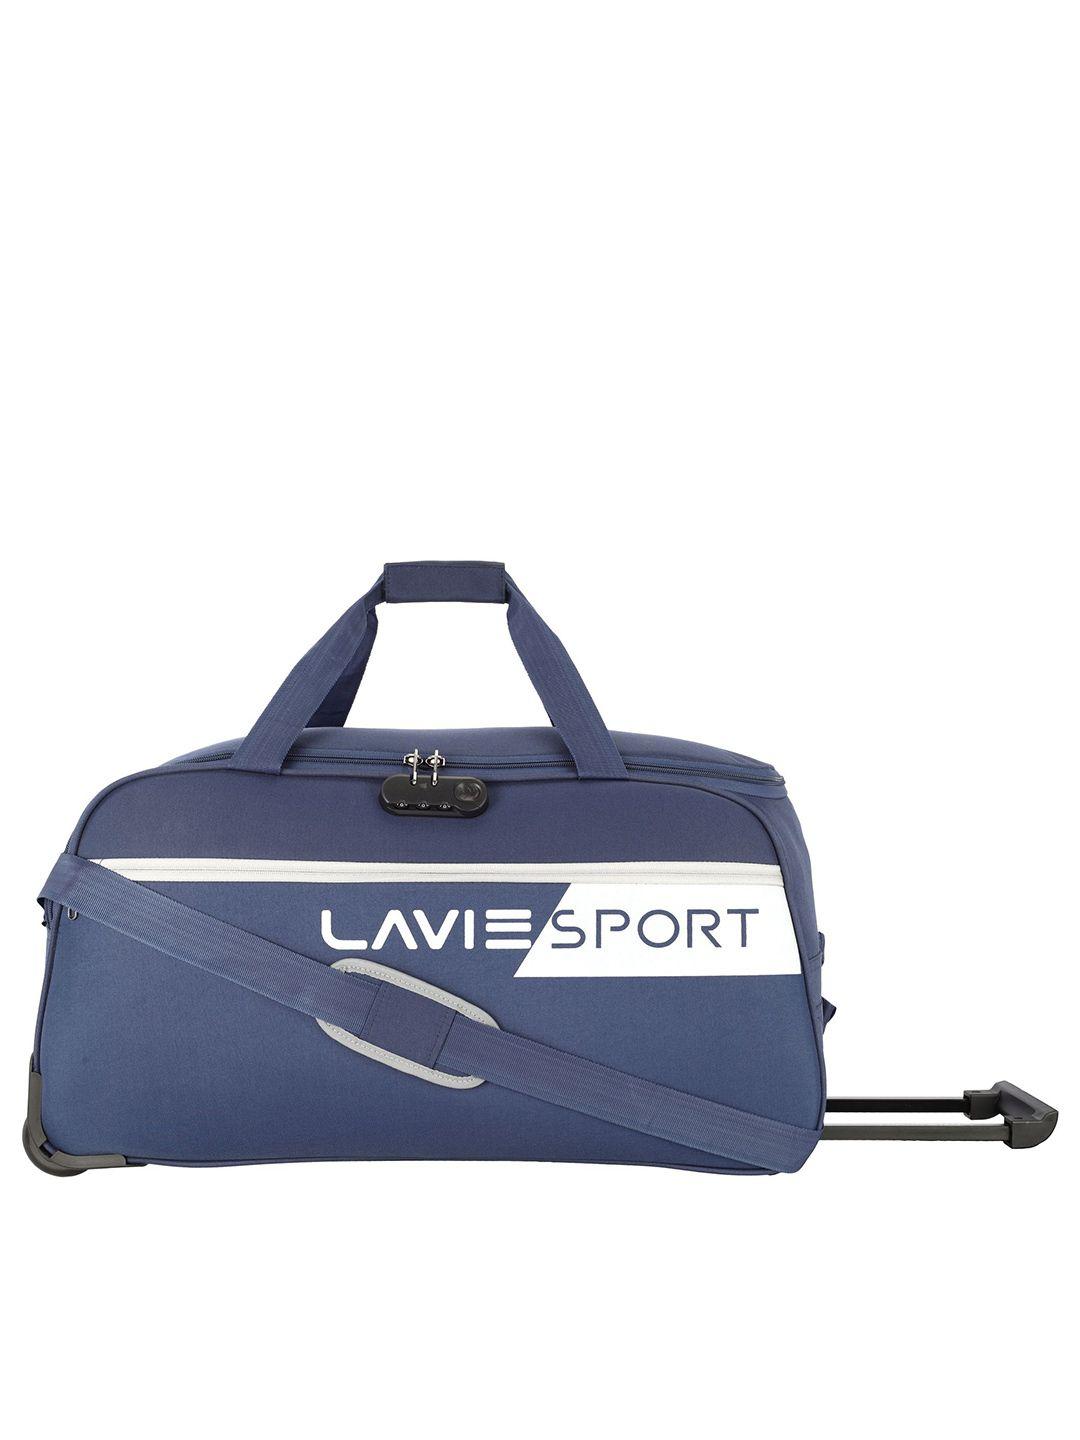 lavie-sport-navy-blue-duffel-printed-bag